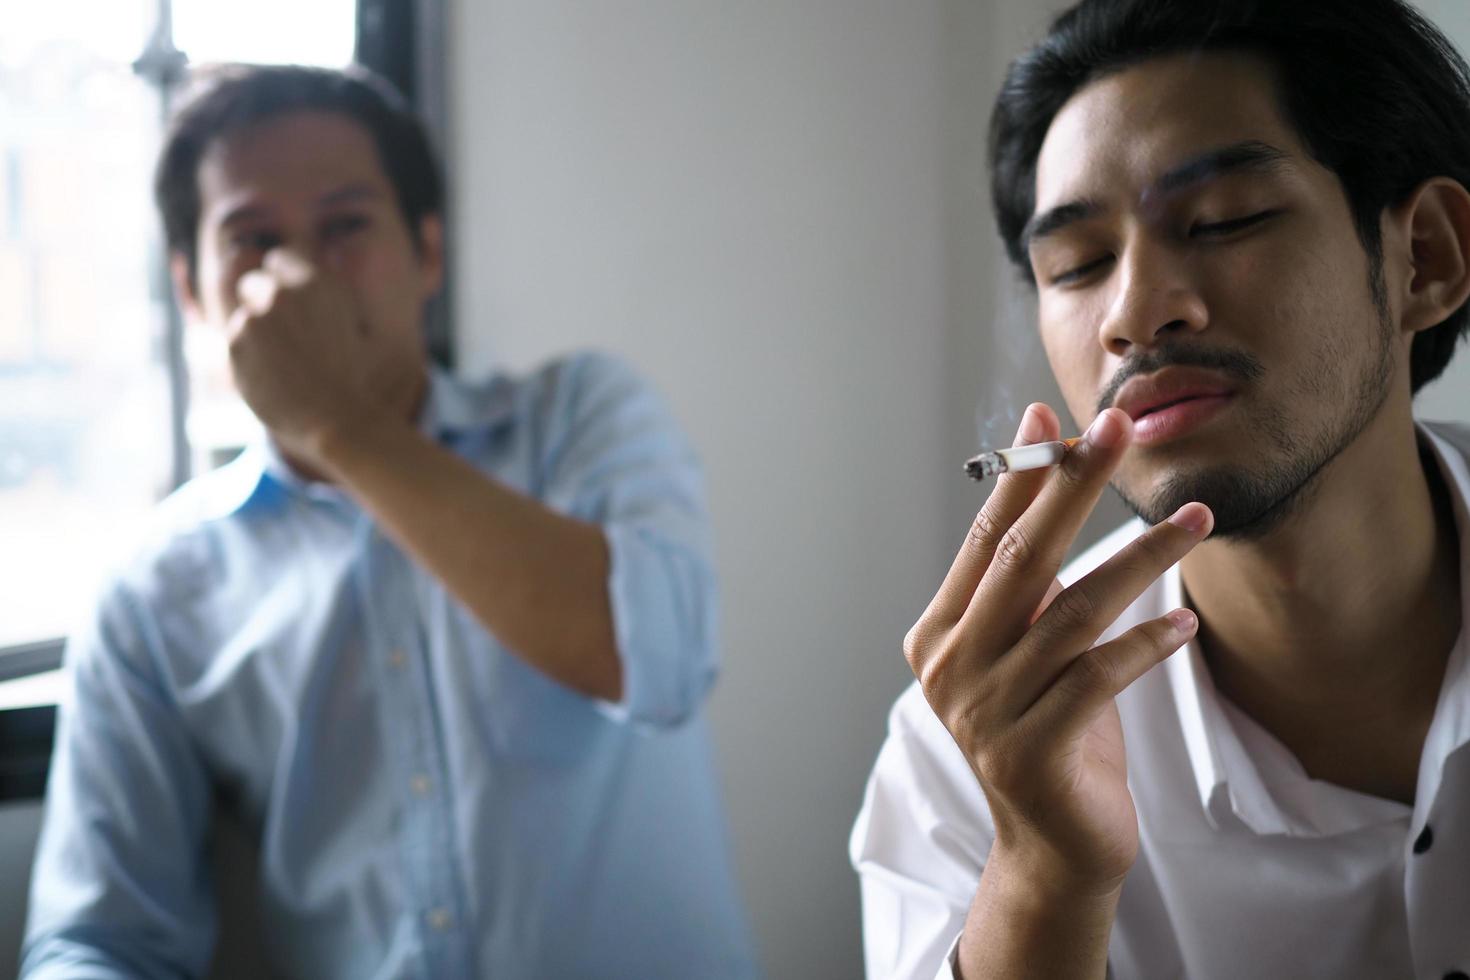 homem está fumando no escritório. colegas sentiram cheiro de cigarro e expressaram repulsa. foto